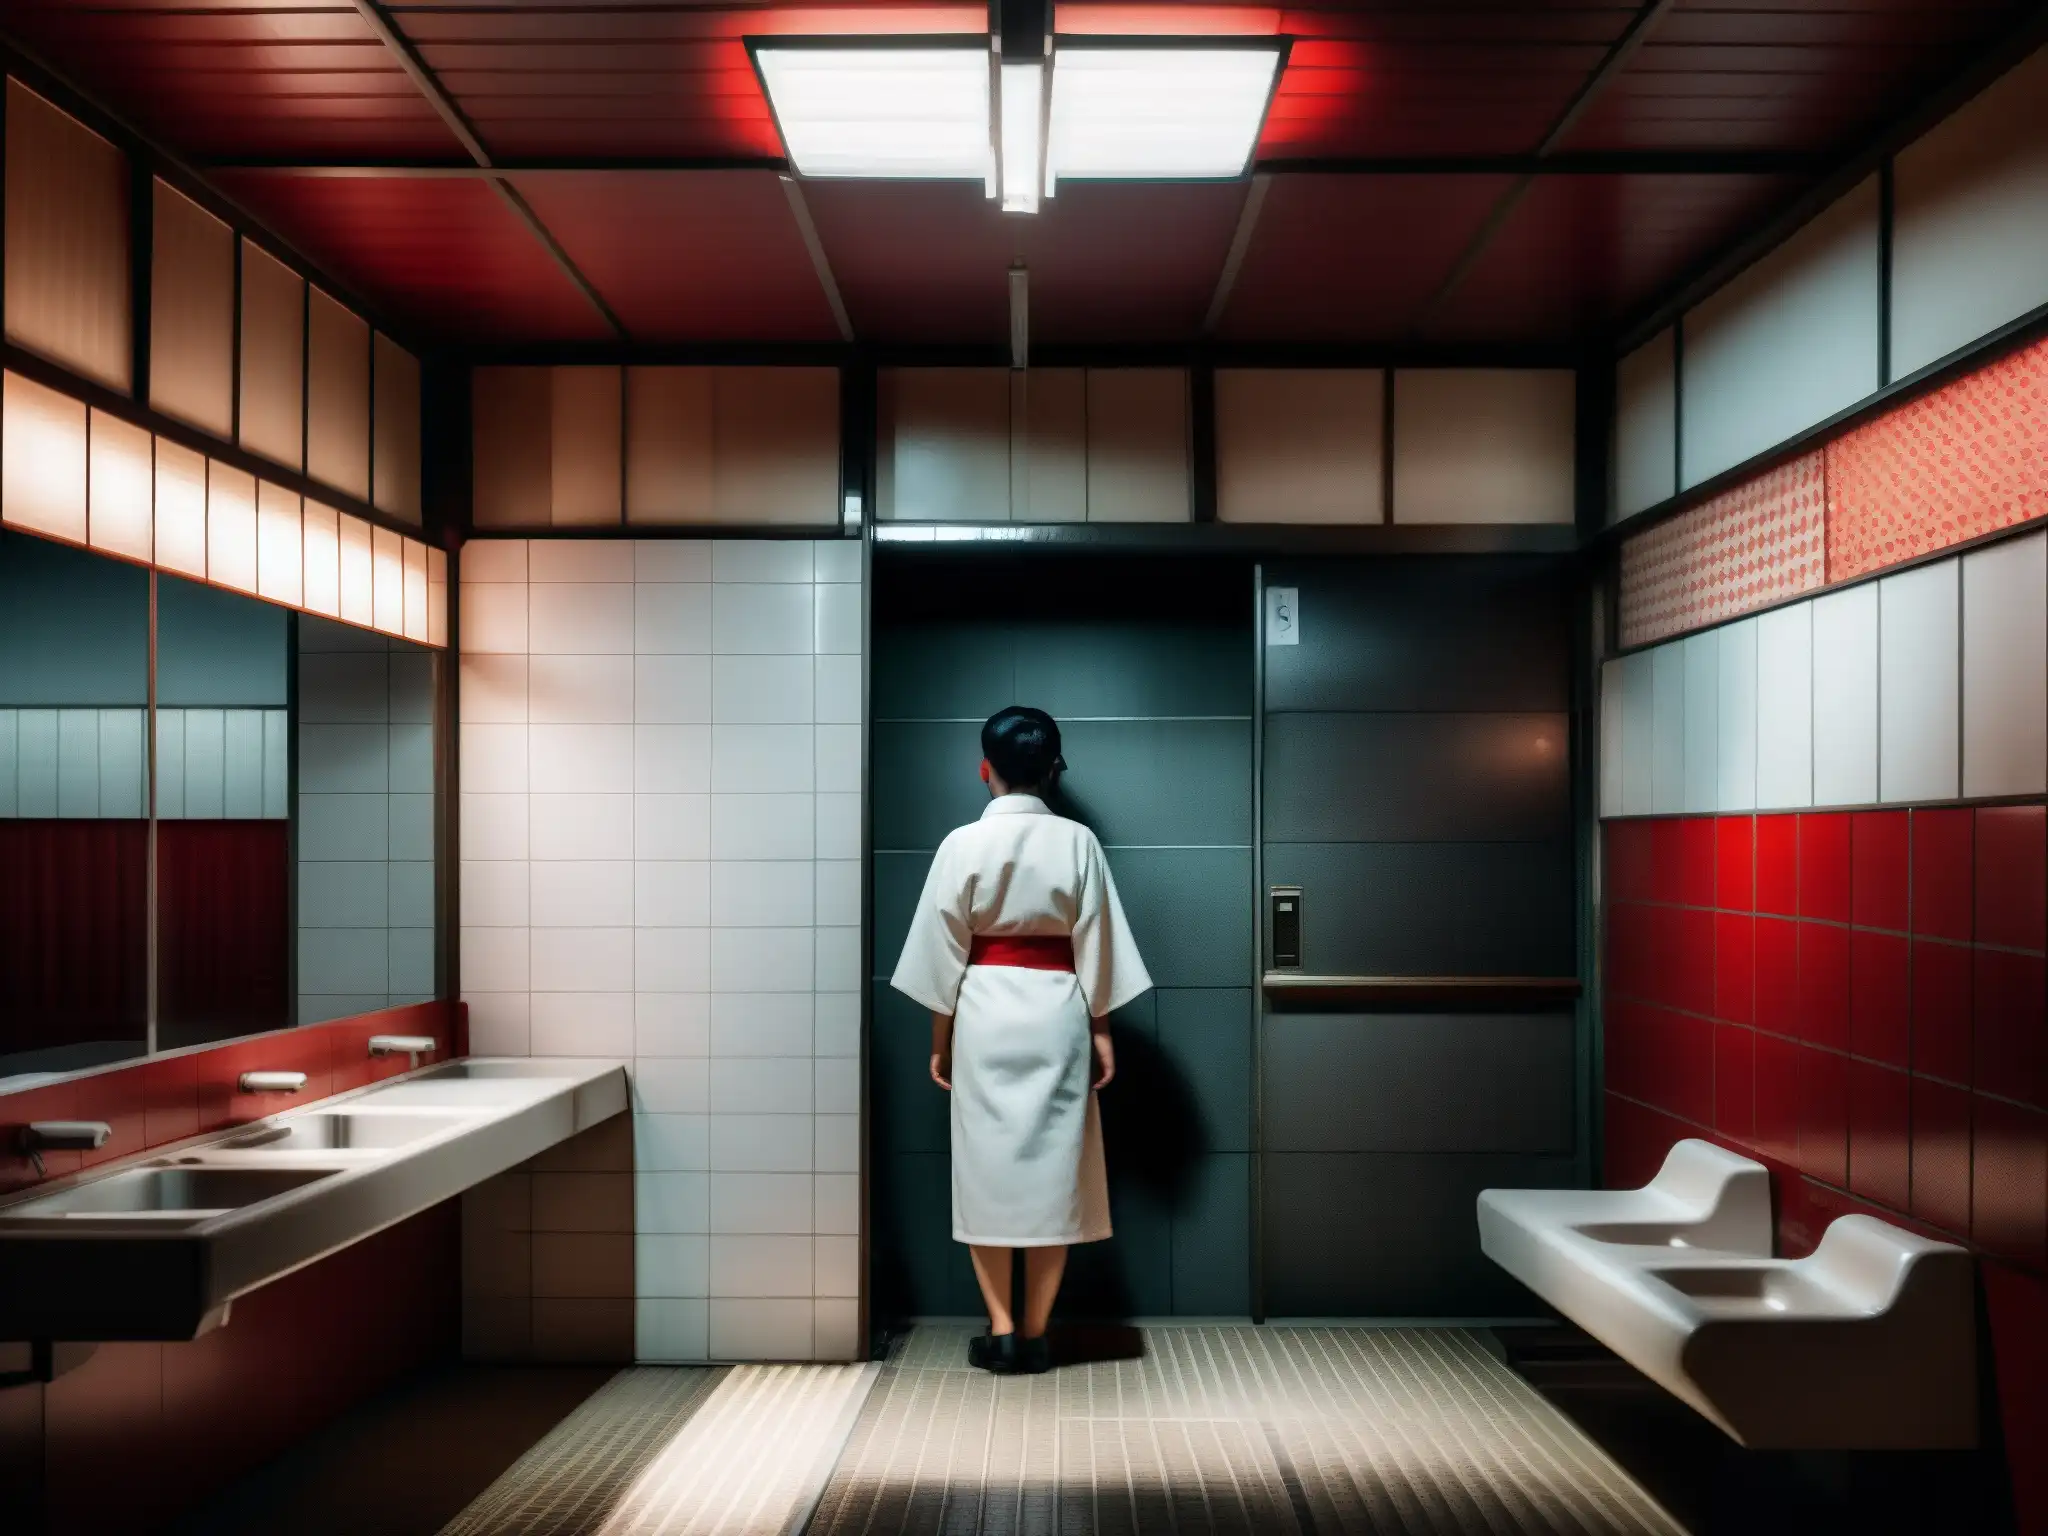 Imagen impactante de un baño público japonés en penumbra, con azulejos rojos y blancos y una figura solitaria, evocando la leyenda urbana de Aka Manto